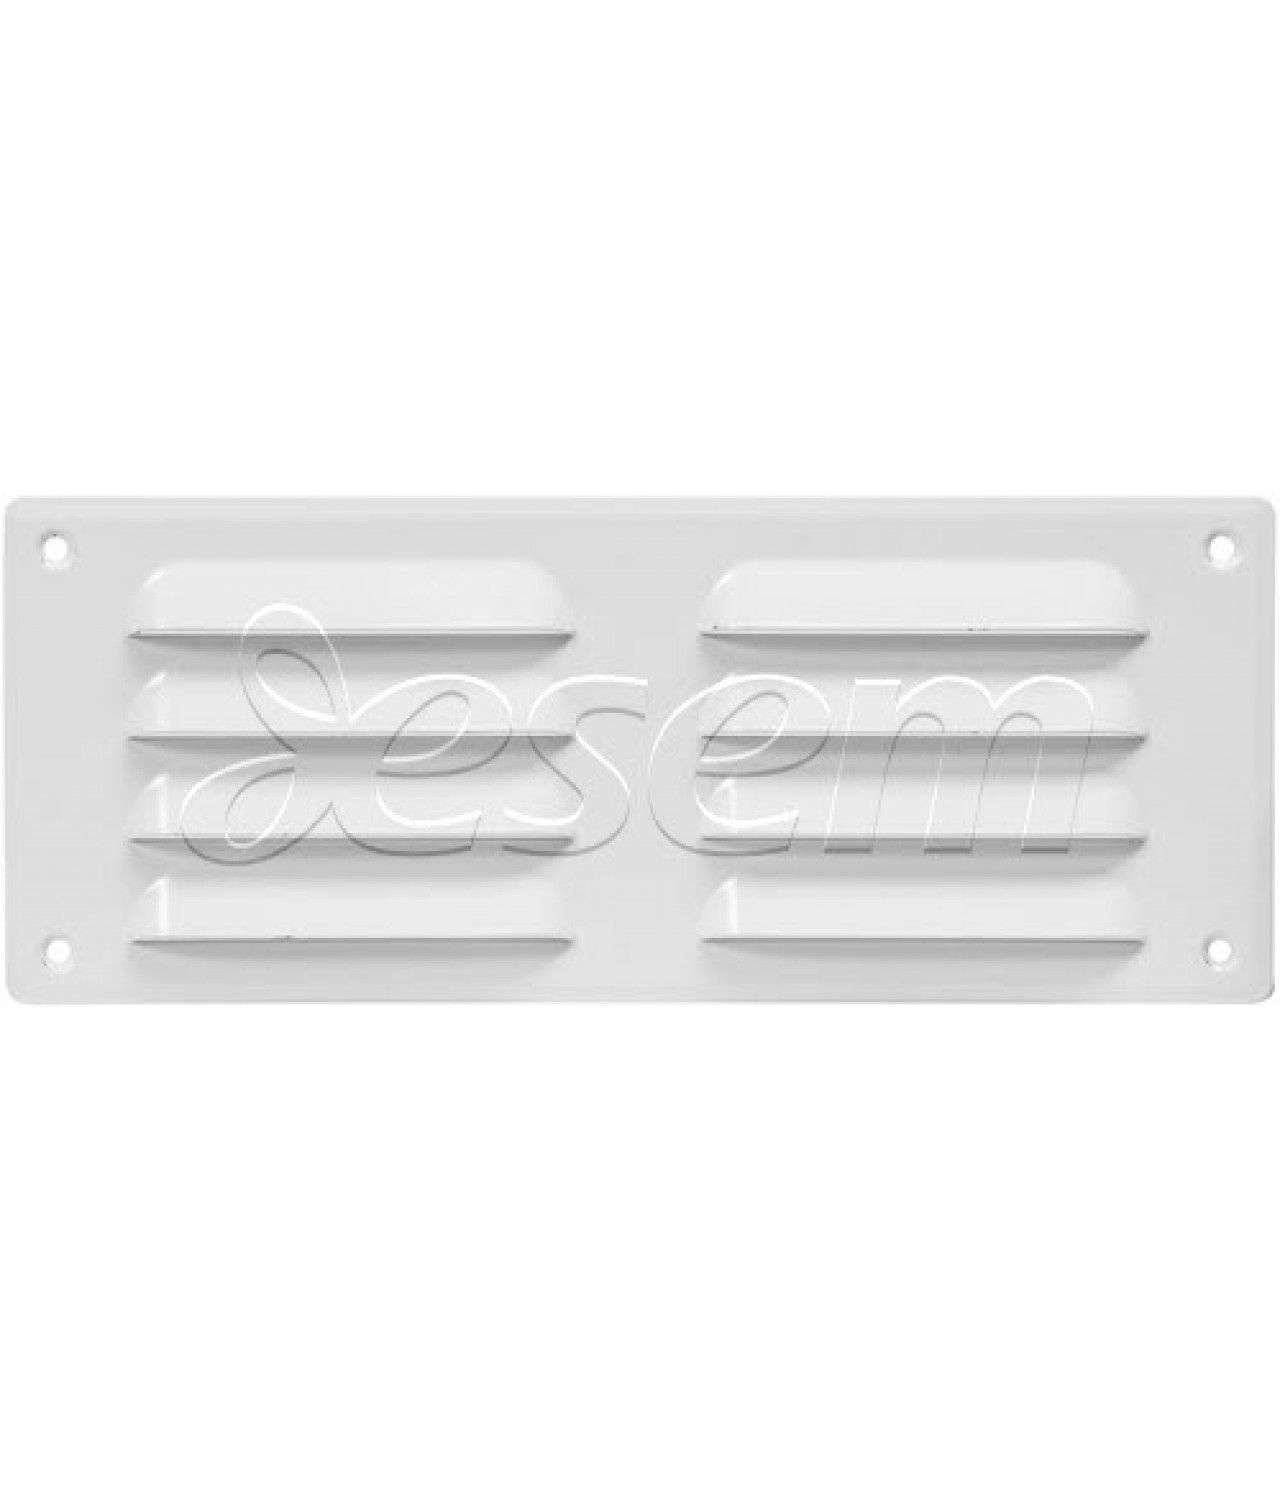 Вентиляционная решетка металлическая EMW26105W 260x105 мм